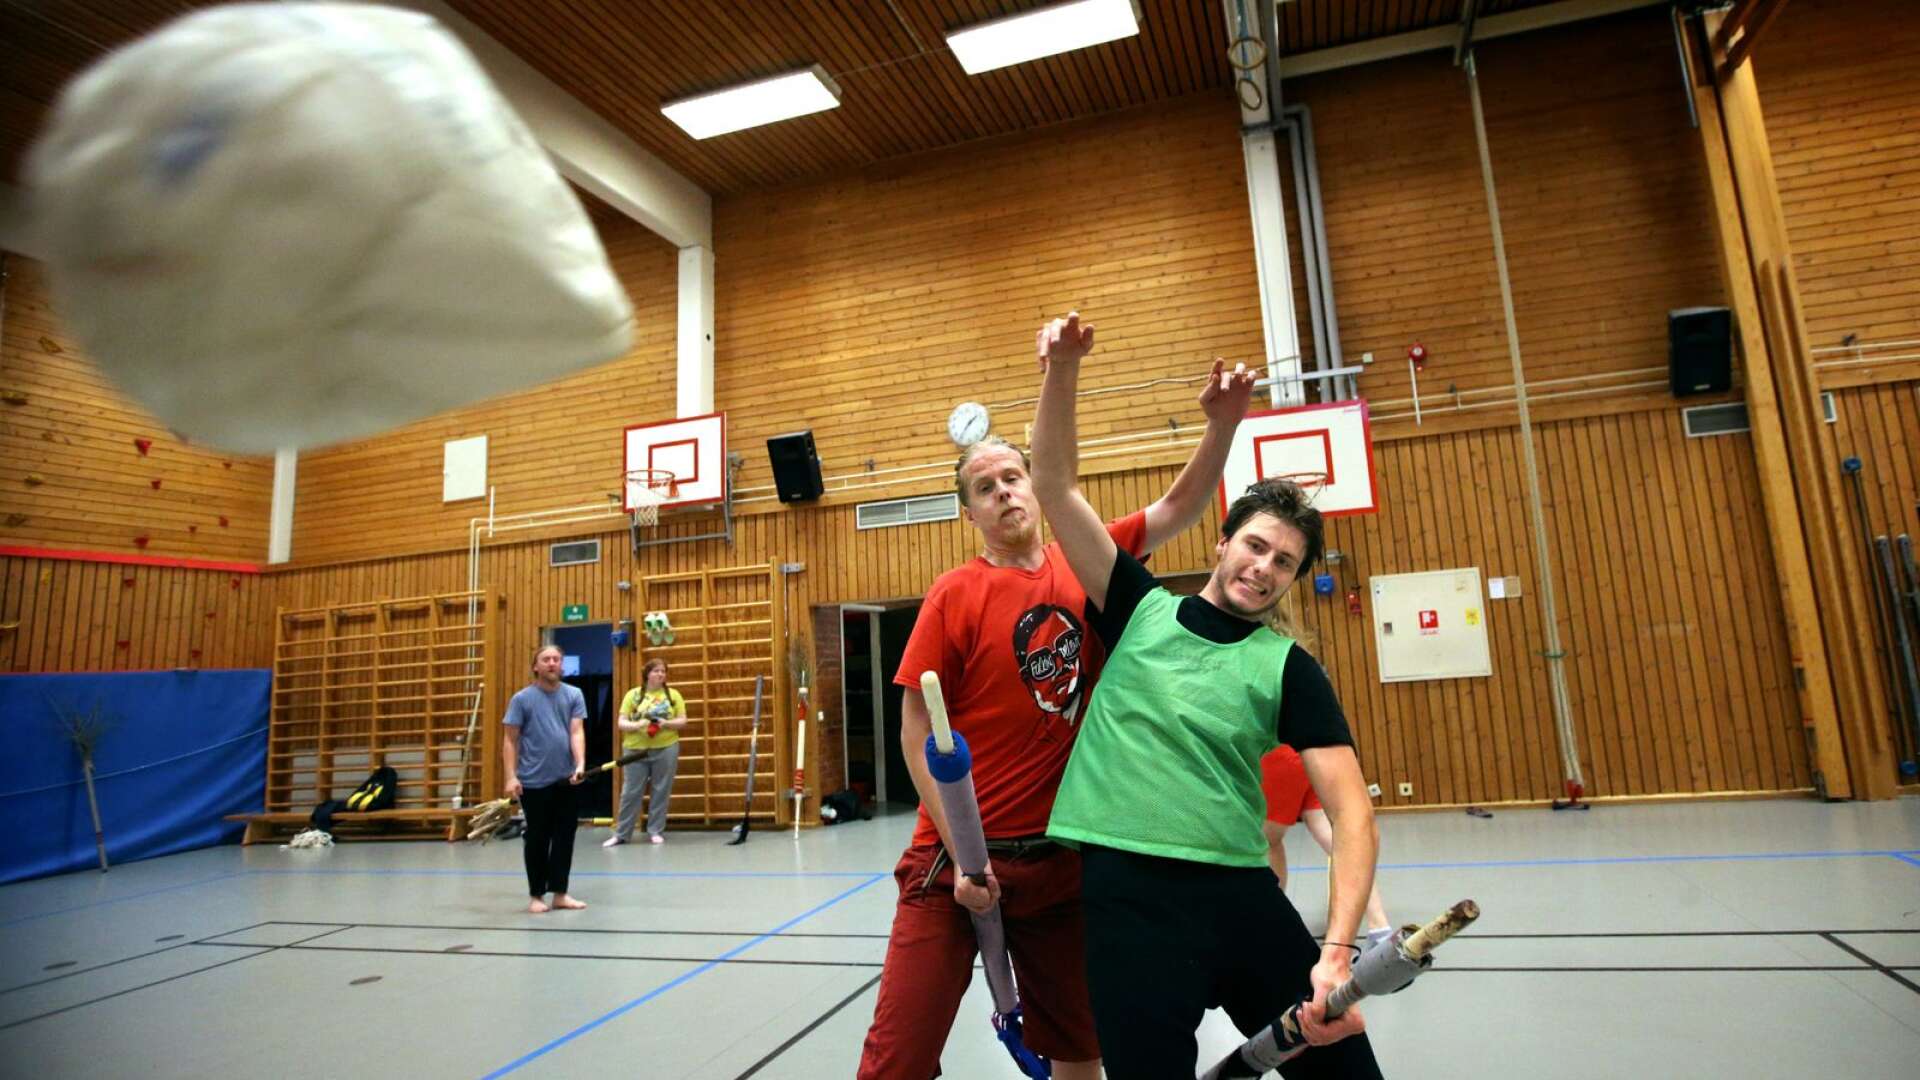 Johan Björk och Joel Blom kämpar om klonken när deras klass spelar en magifri variant av quidditch under kursen skapa världar på Kristinehamns folkhögskola.